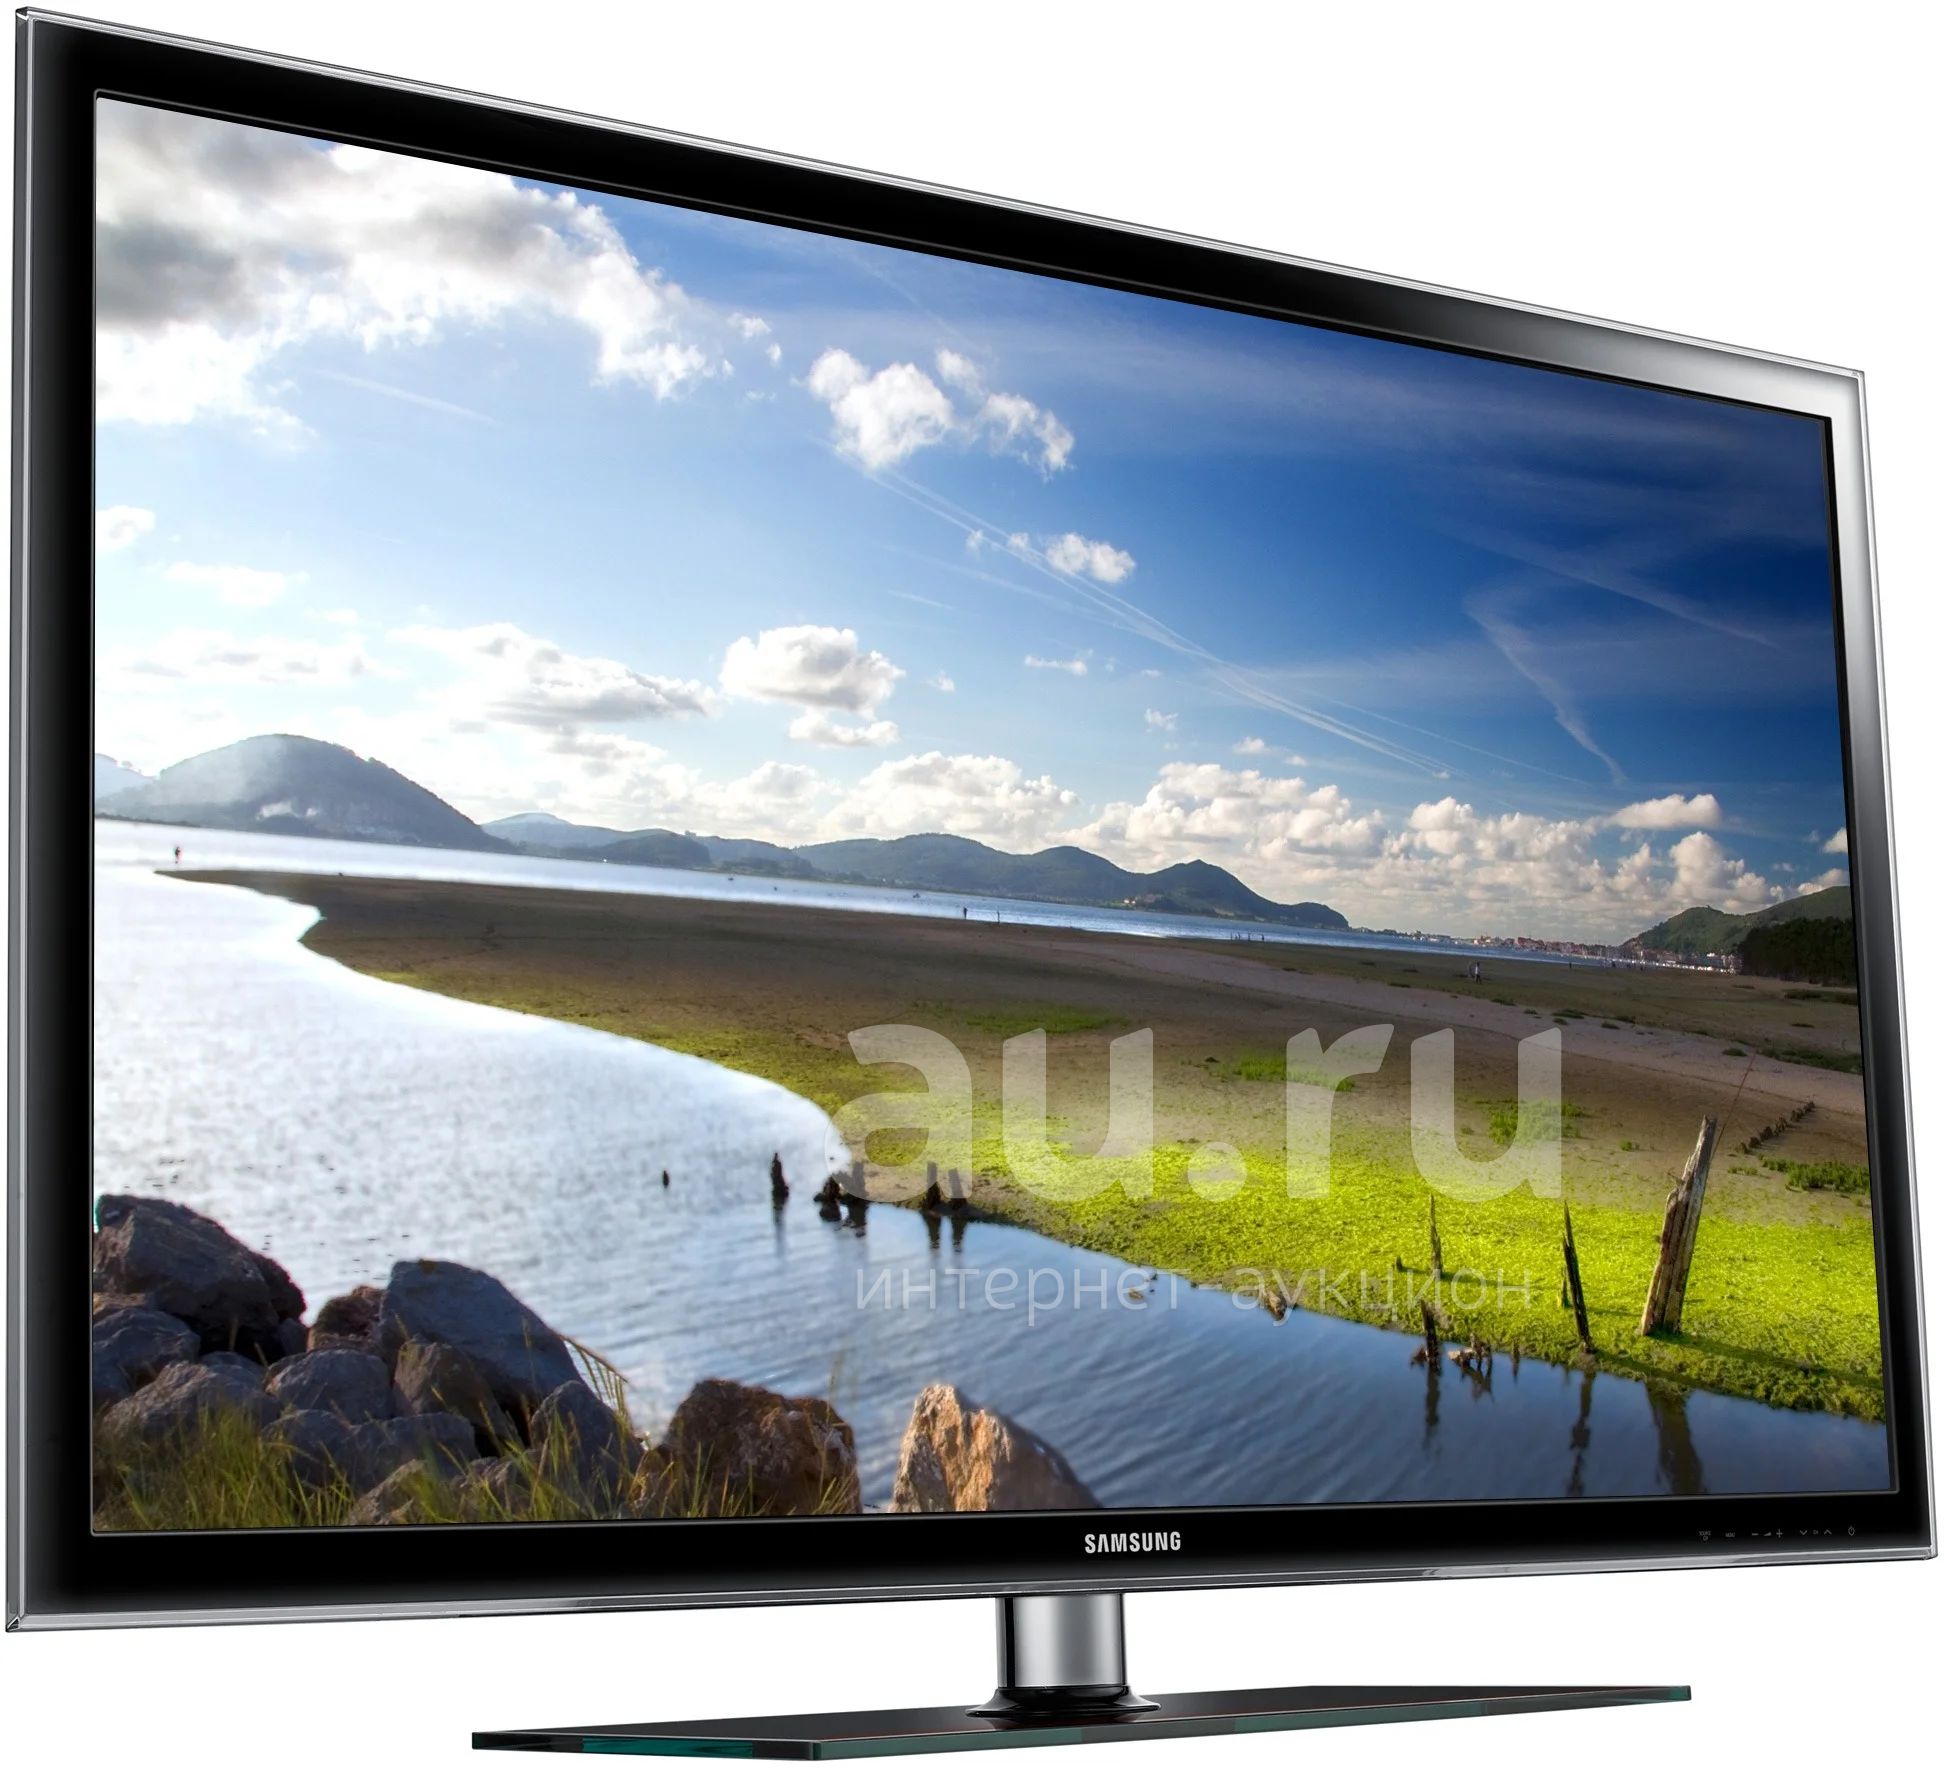 Купить телевизор в московской области. Samsung ue32h5000. Телевизор Samsung ue32d5000. Телевизор самсунг ue32d5000pw. Телевизор Samsung ue32d5000 32".